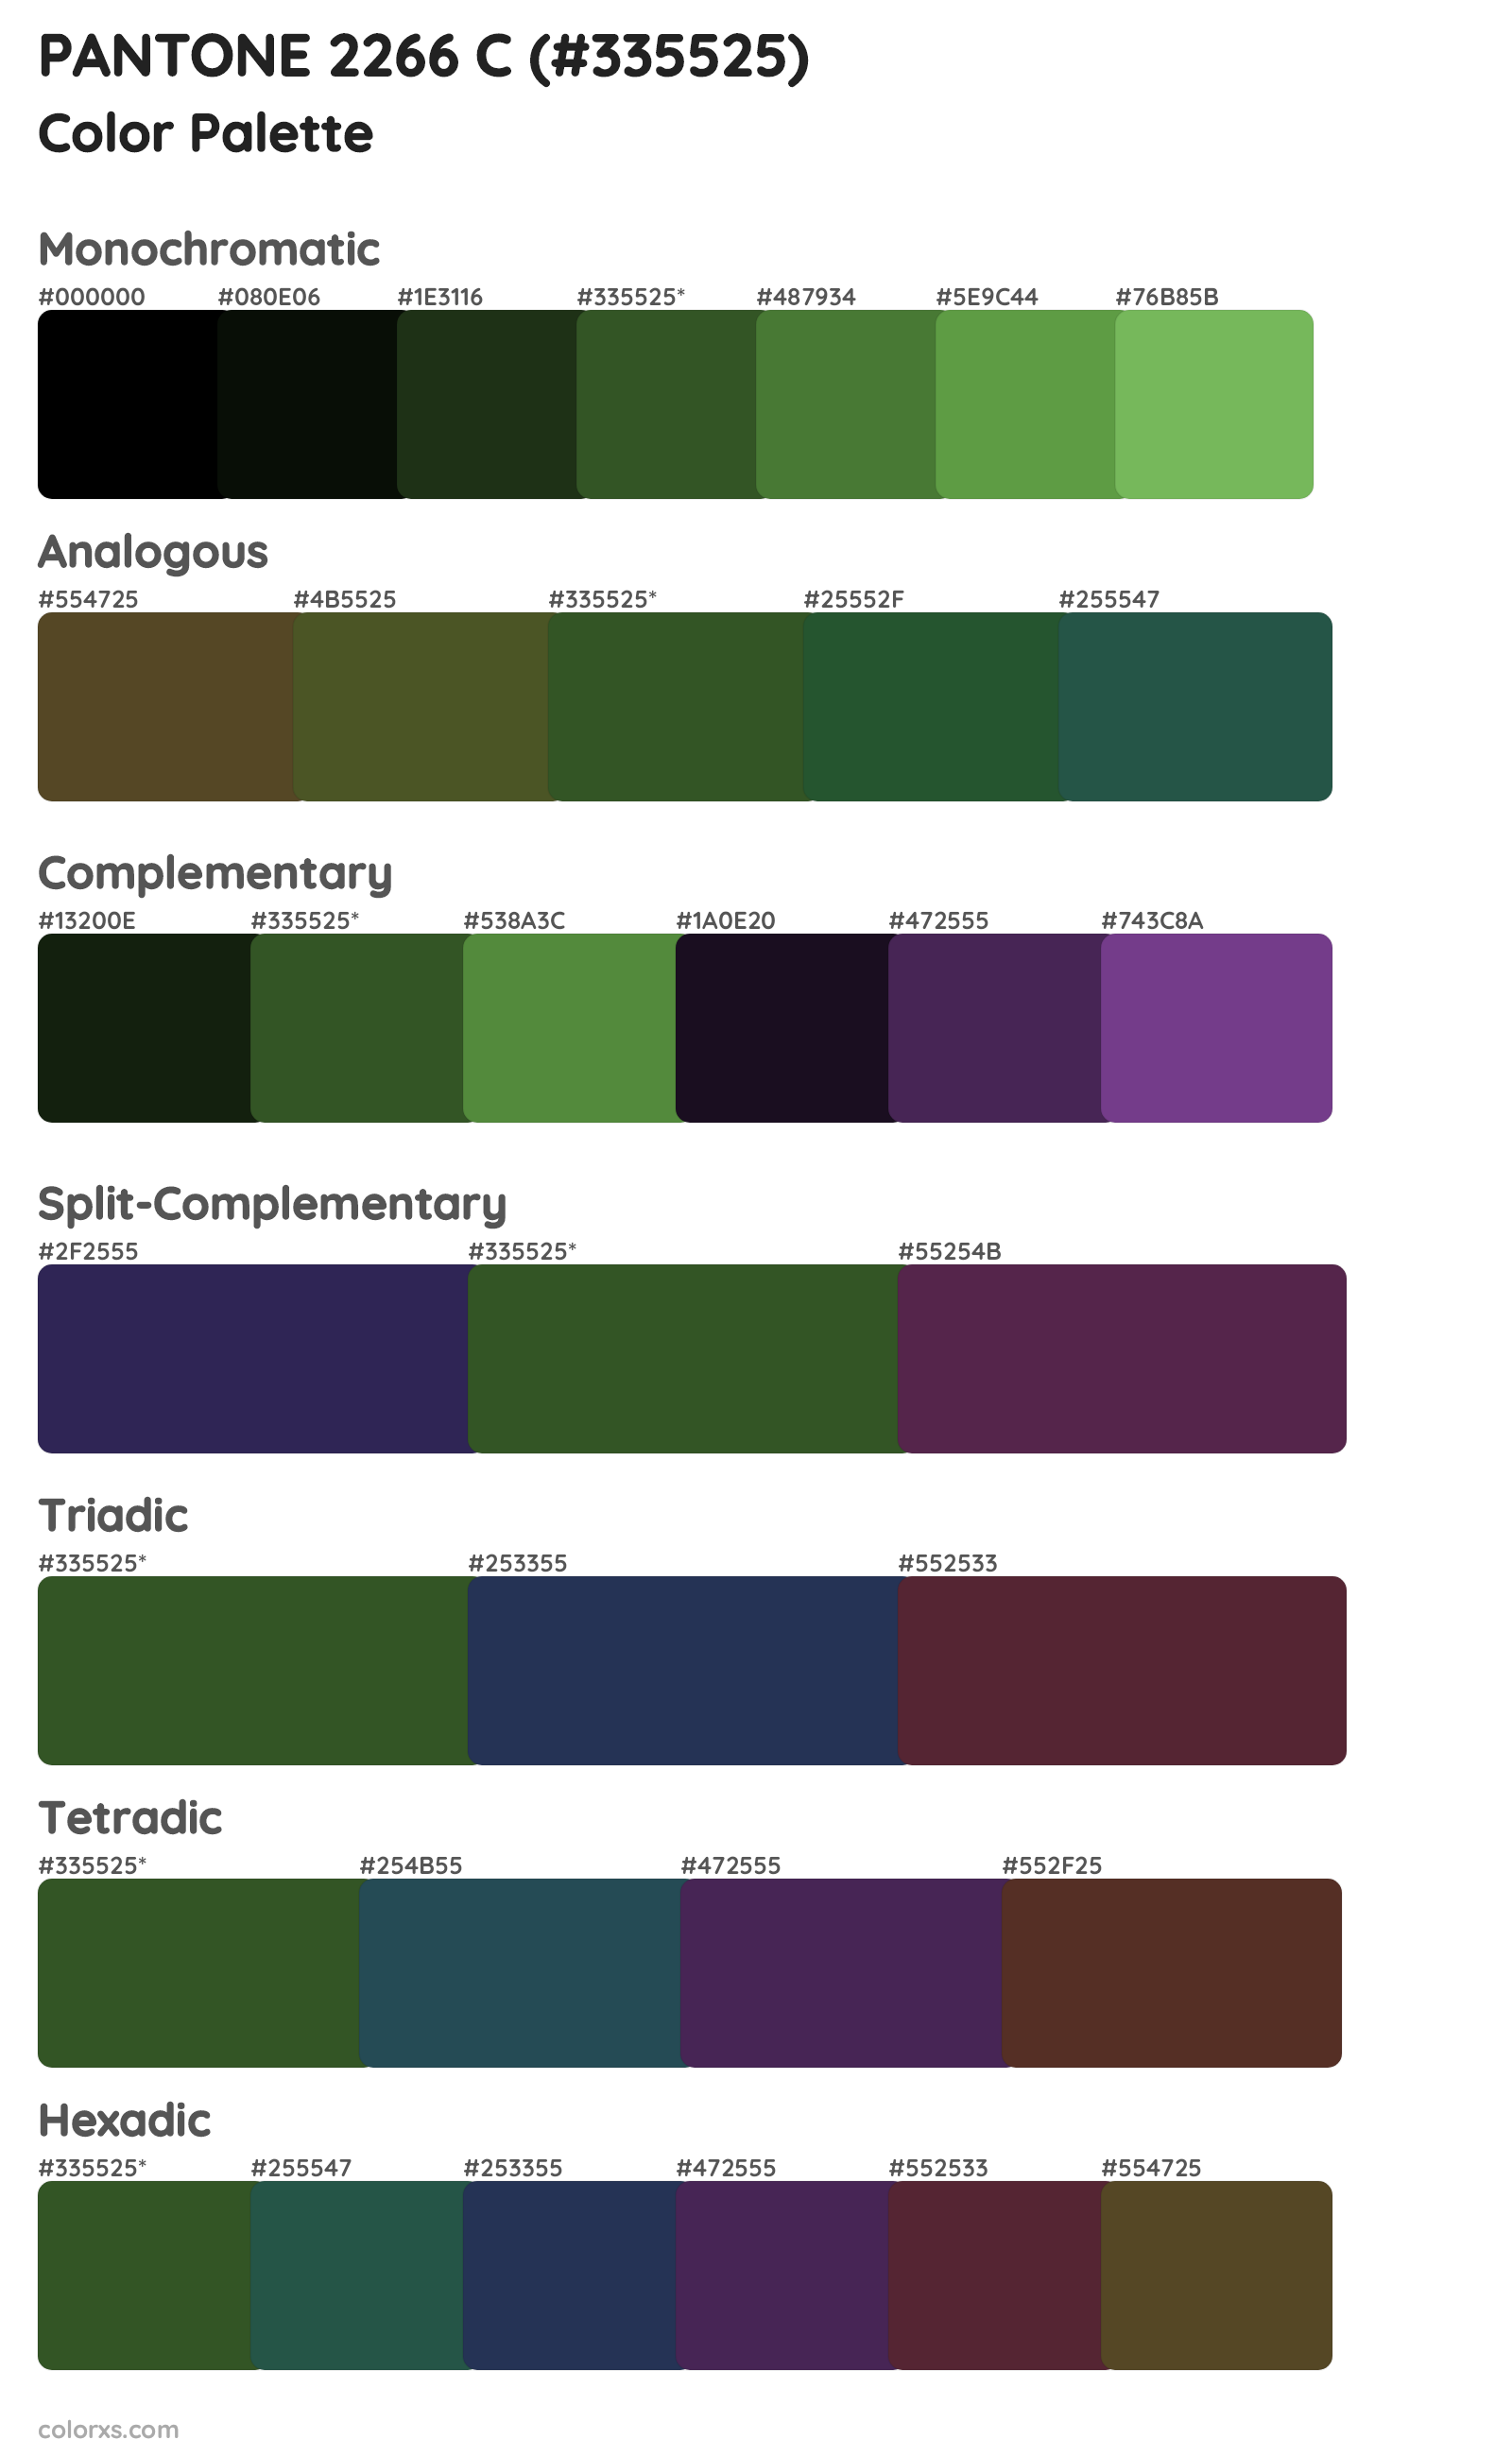 PANTONE 2266 C Color Scheme Palettes